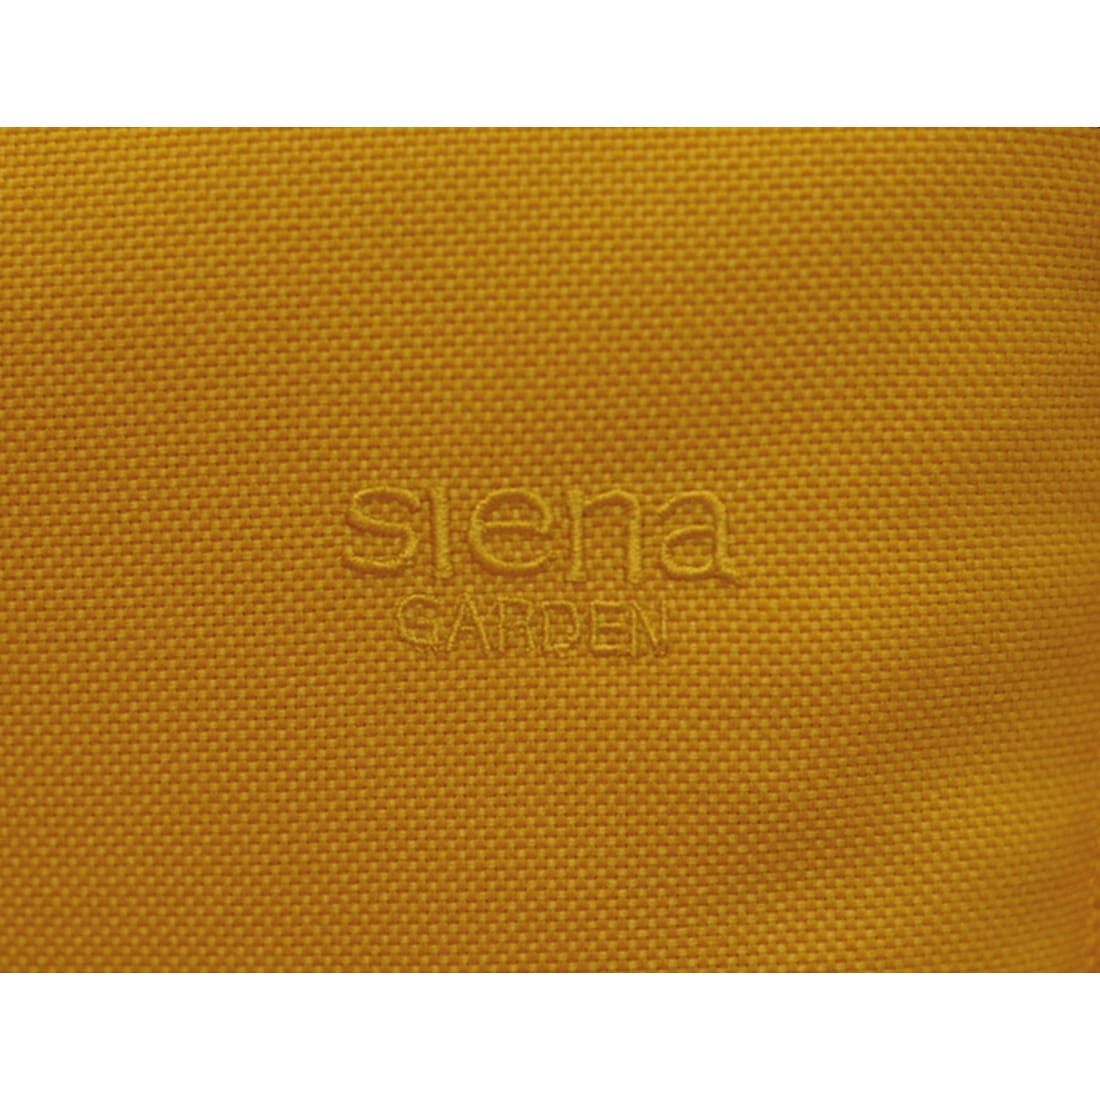 Siena Garden Musica Standardauflage 100x48x3cm Olefin